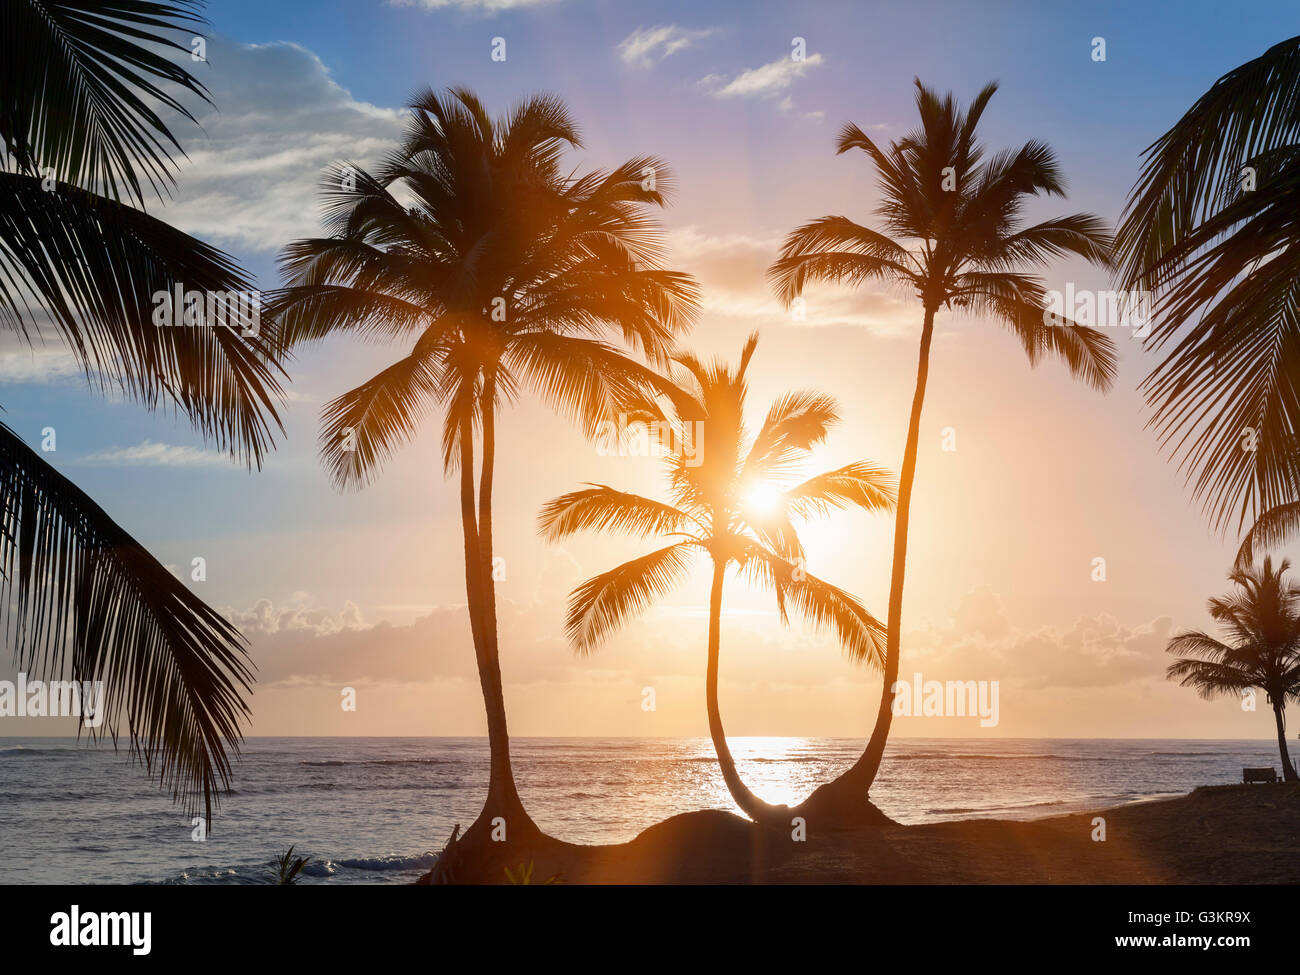 La silhouette des palmiers au coucher du soleil sur la plage, la République dominicaine, les Caraïbes Banque D'Images